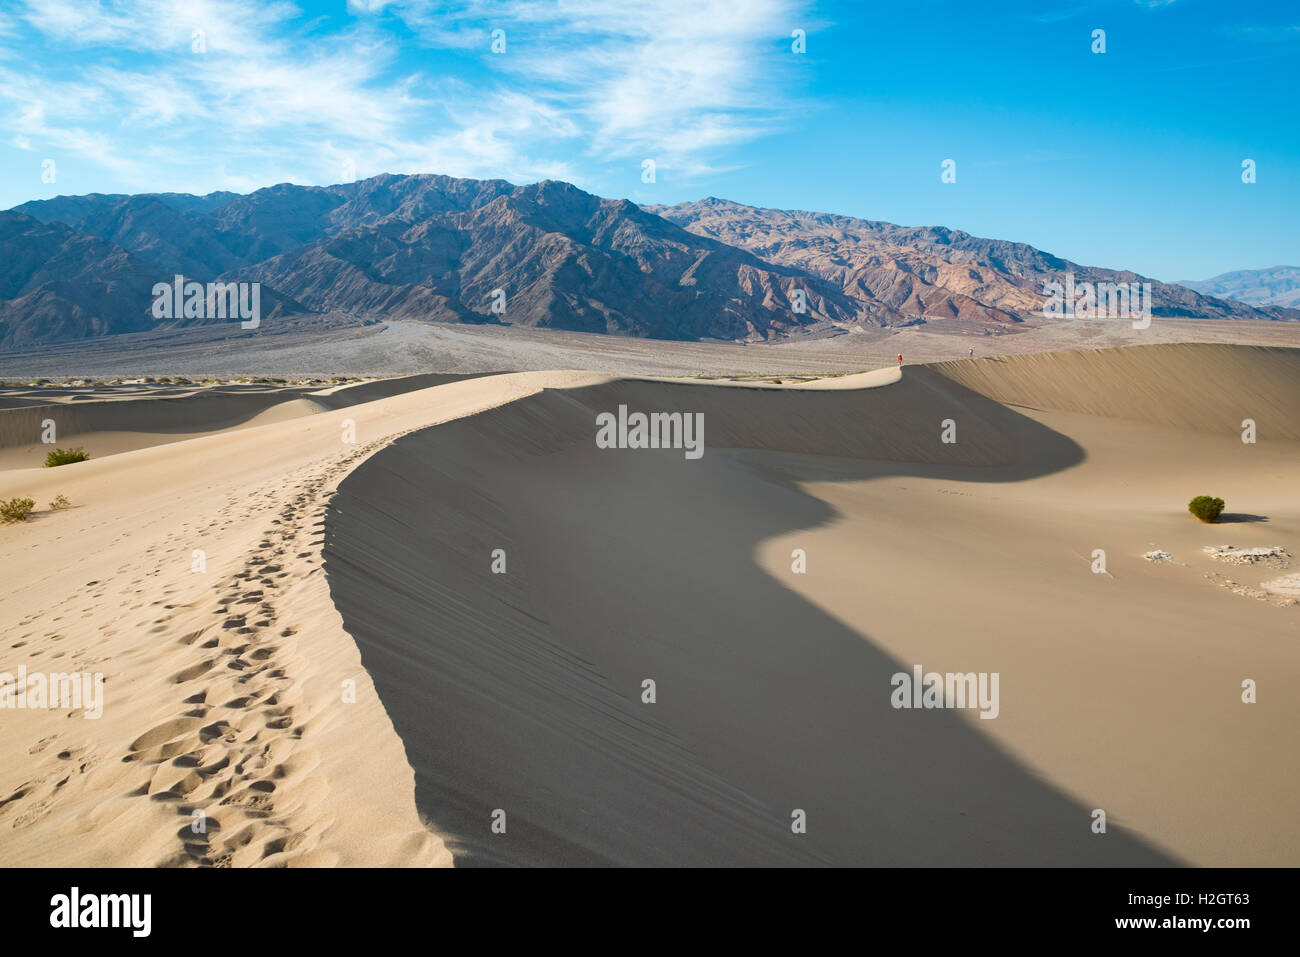 Mesquite Flat dunes de sable, de montagnes Amargosa foothills, Death Valley National Park, California, USA Banque D'Images